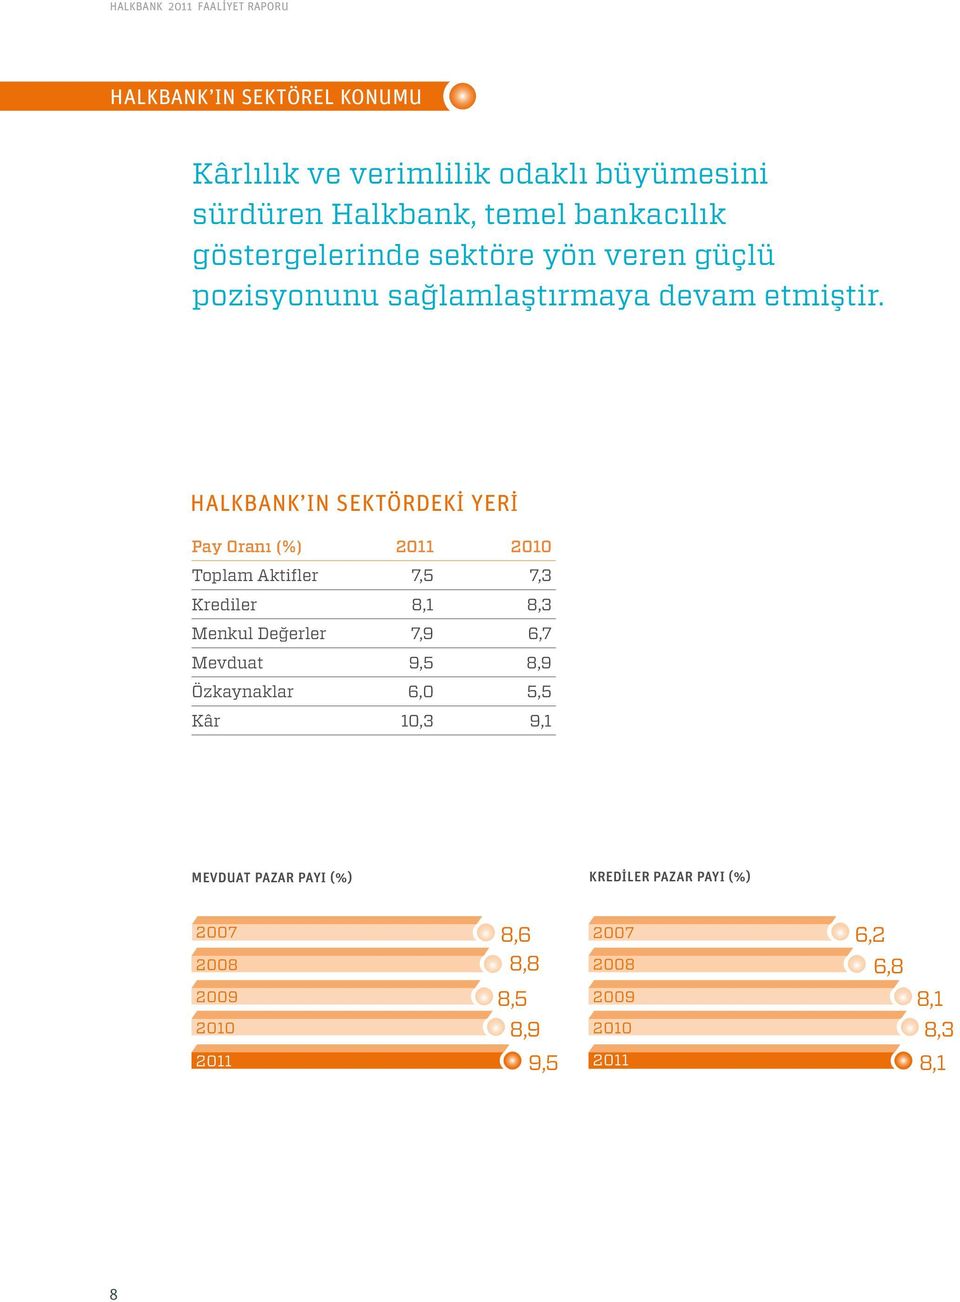 Halkbank ın Sektördekİ Yerİ Pay Oranı (%) 2011 2010 Toplam Aktifler 7,5 7,3 Krediler 8,1 8,3 Menkul Değerler 7,9 6,7 Mevduat 9,5